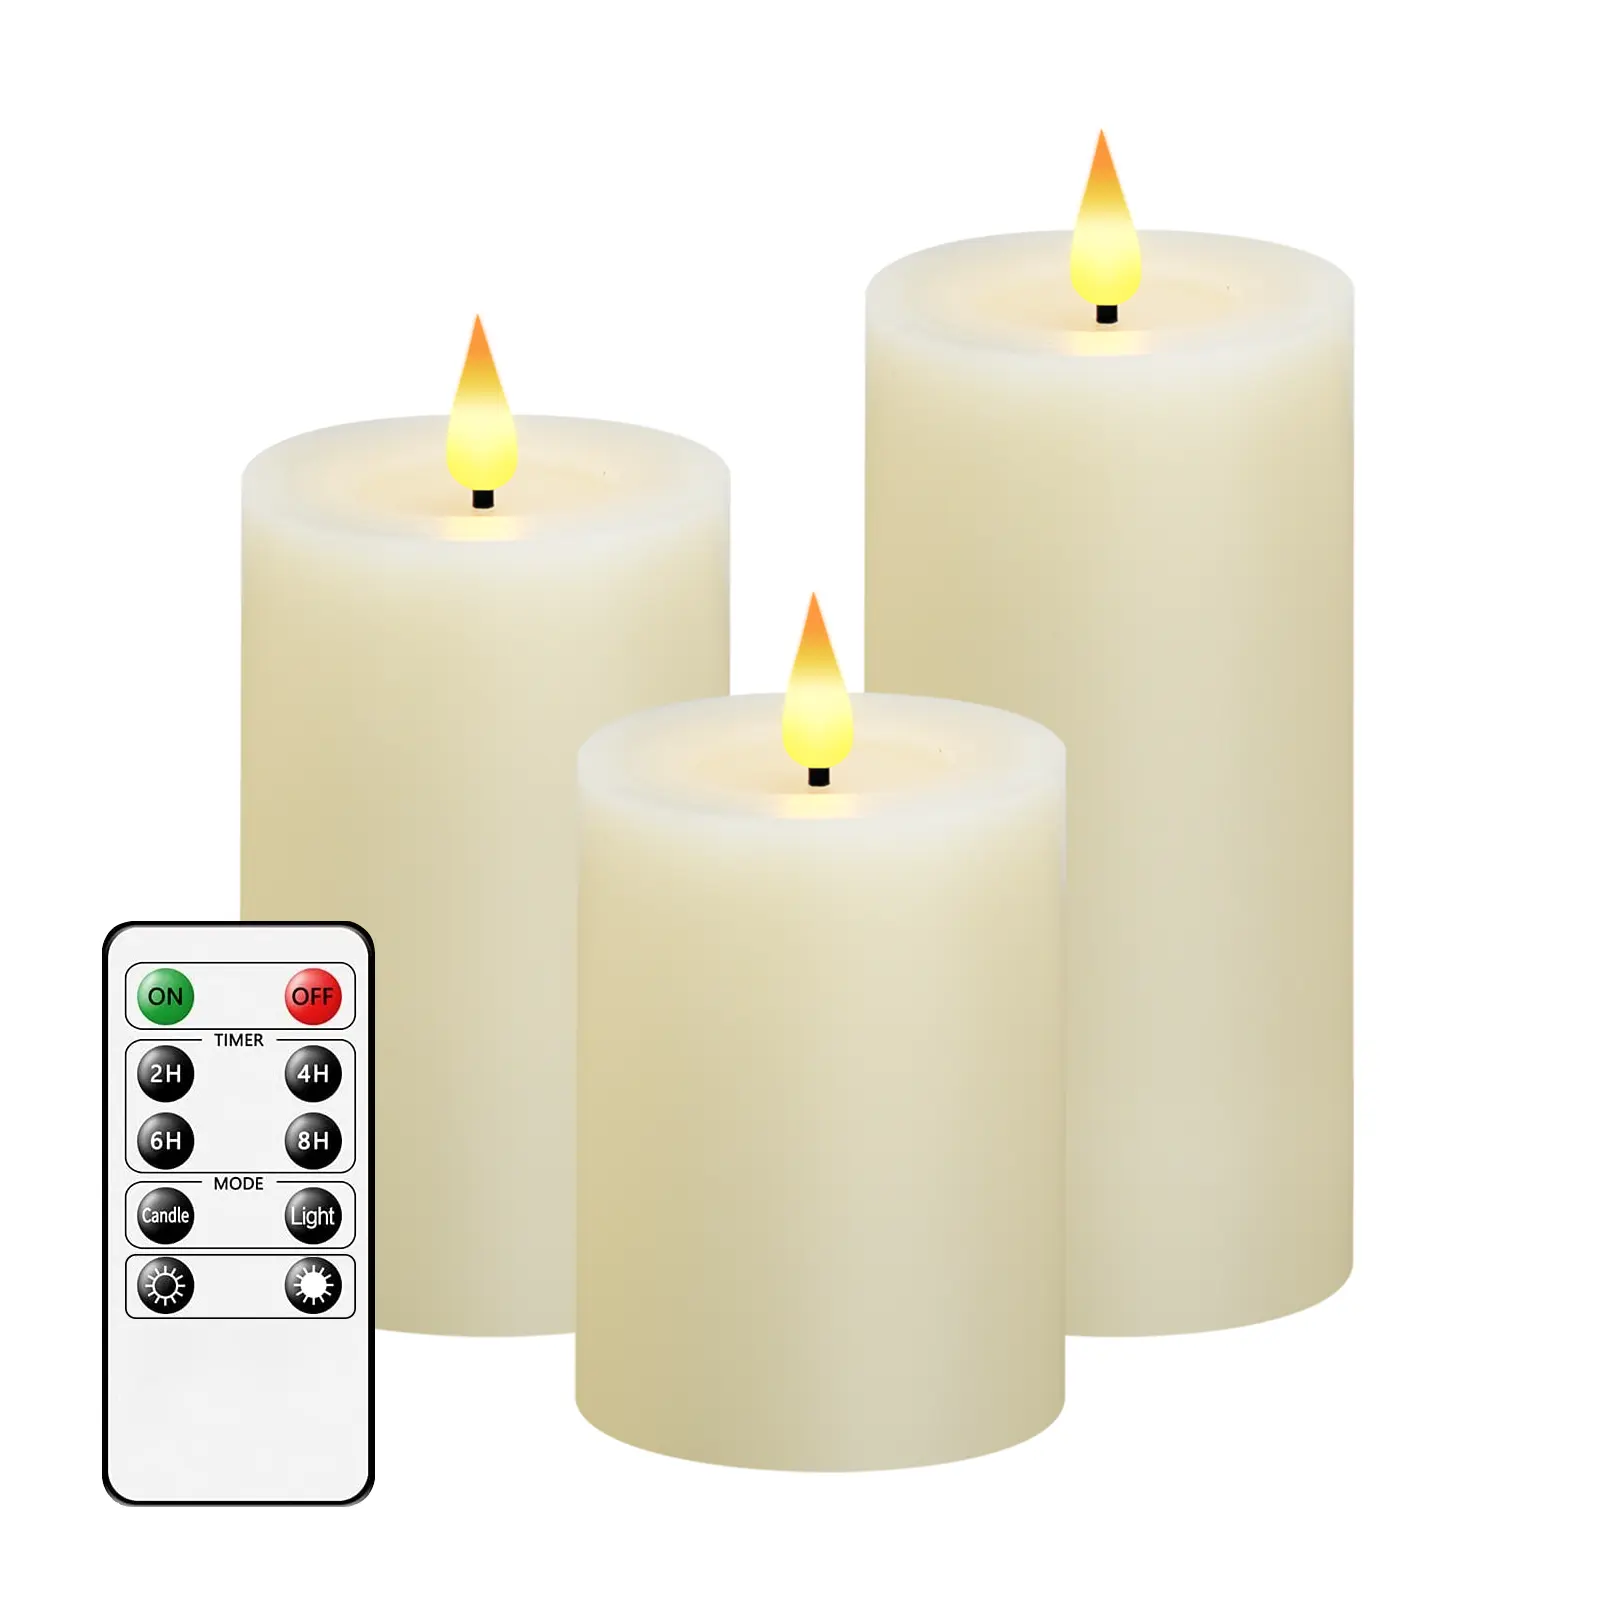 Nuovo stile cera reale 3 dimensioni candele con telecomando 2/4/6/8 timer all'ingrosso pilastro candele di alta qualità